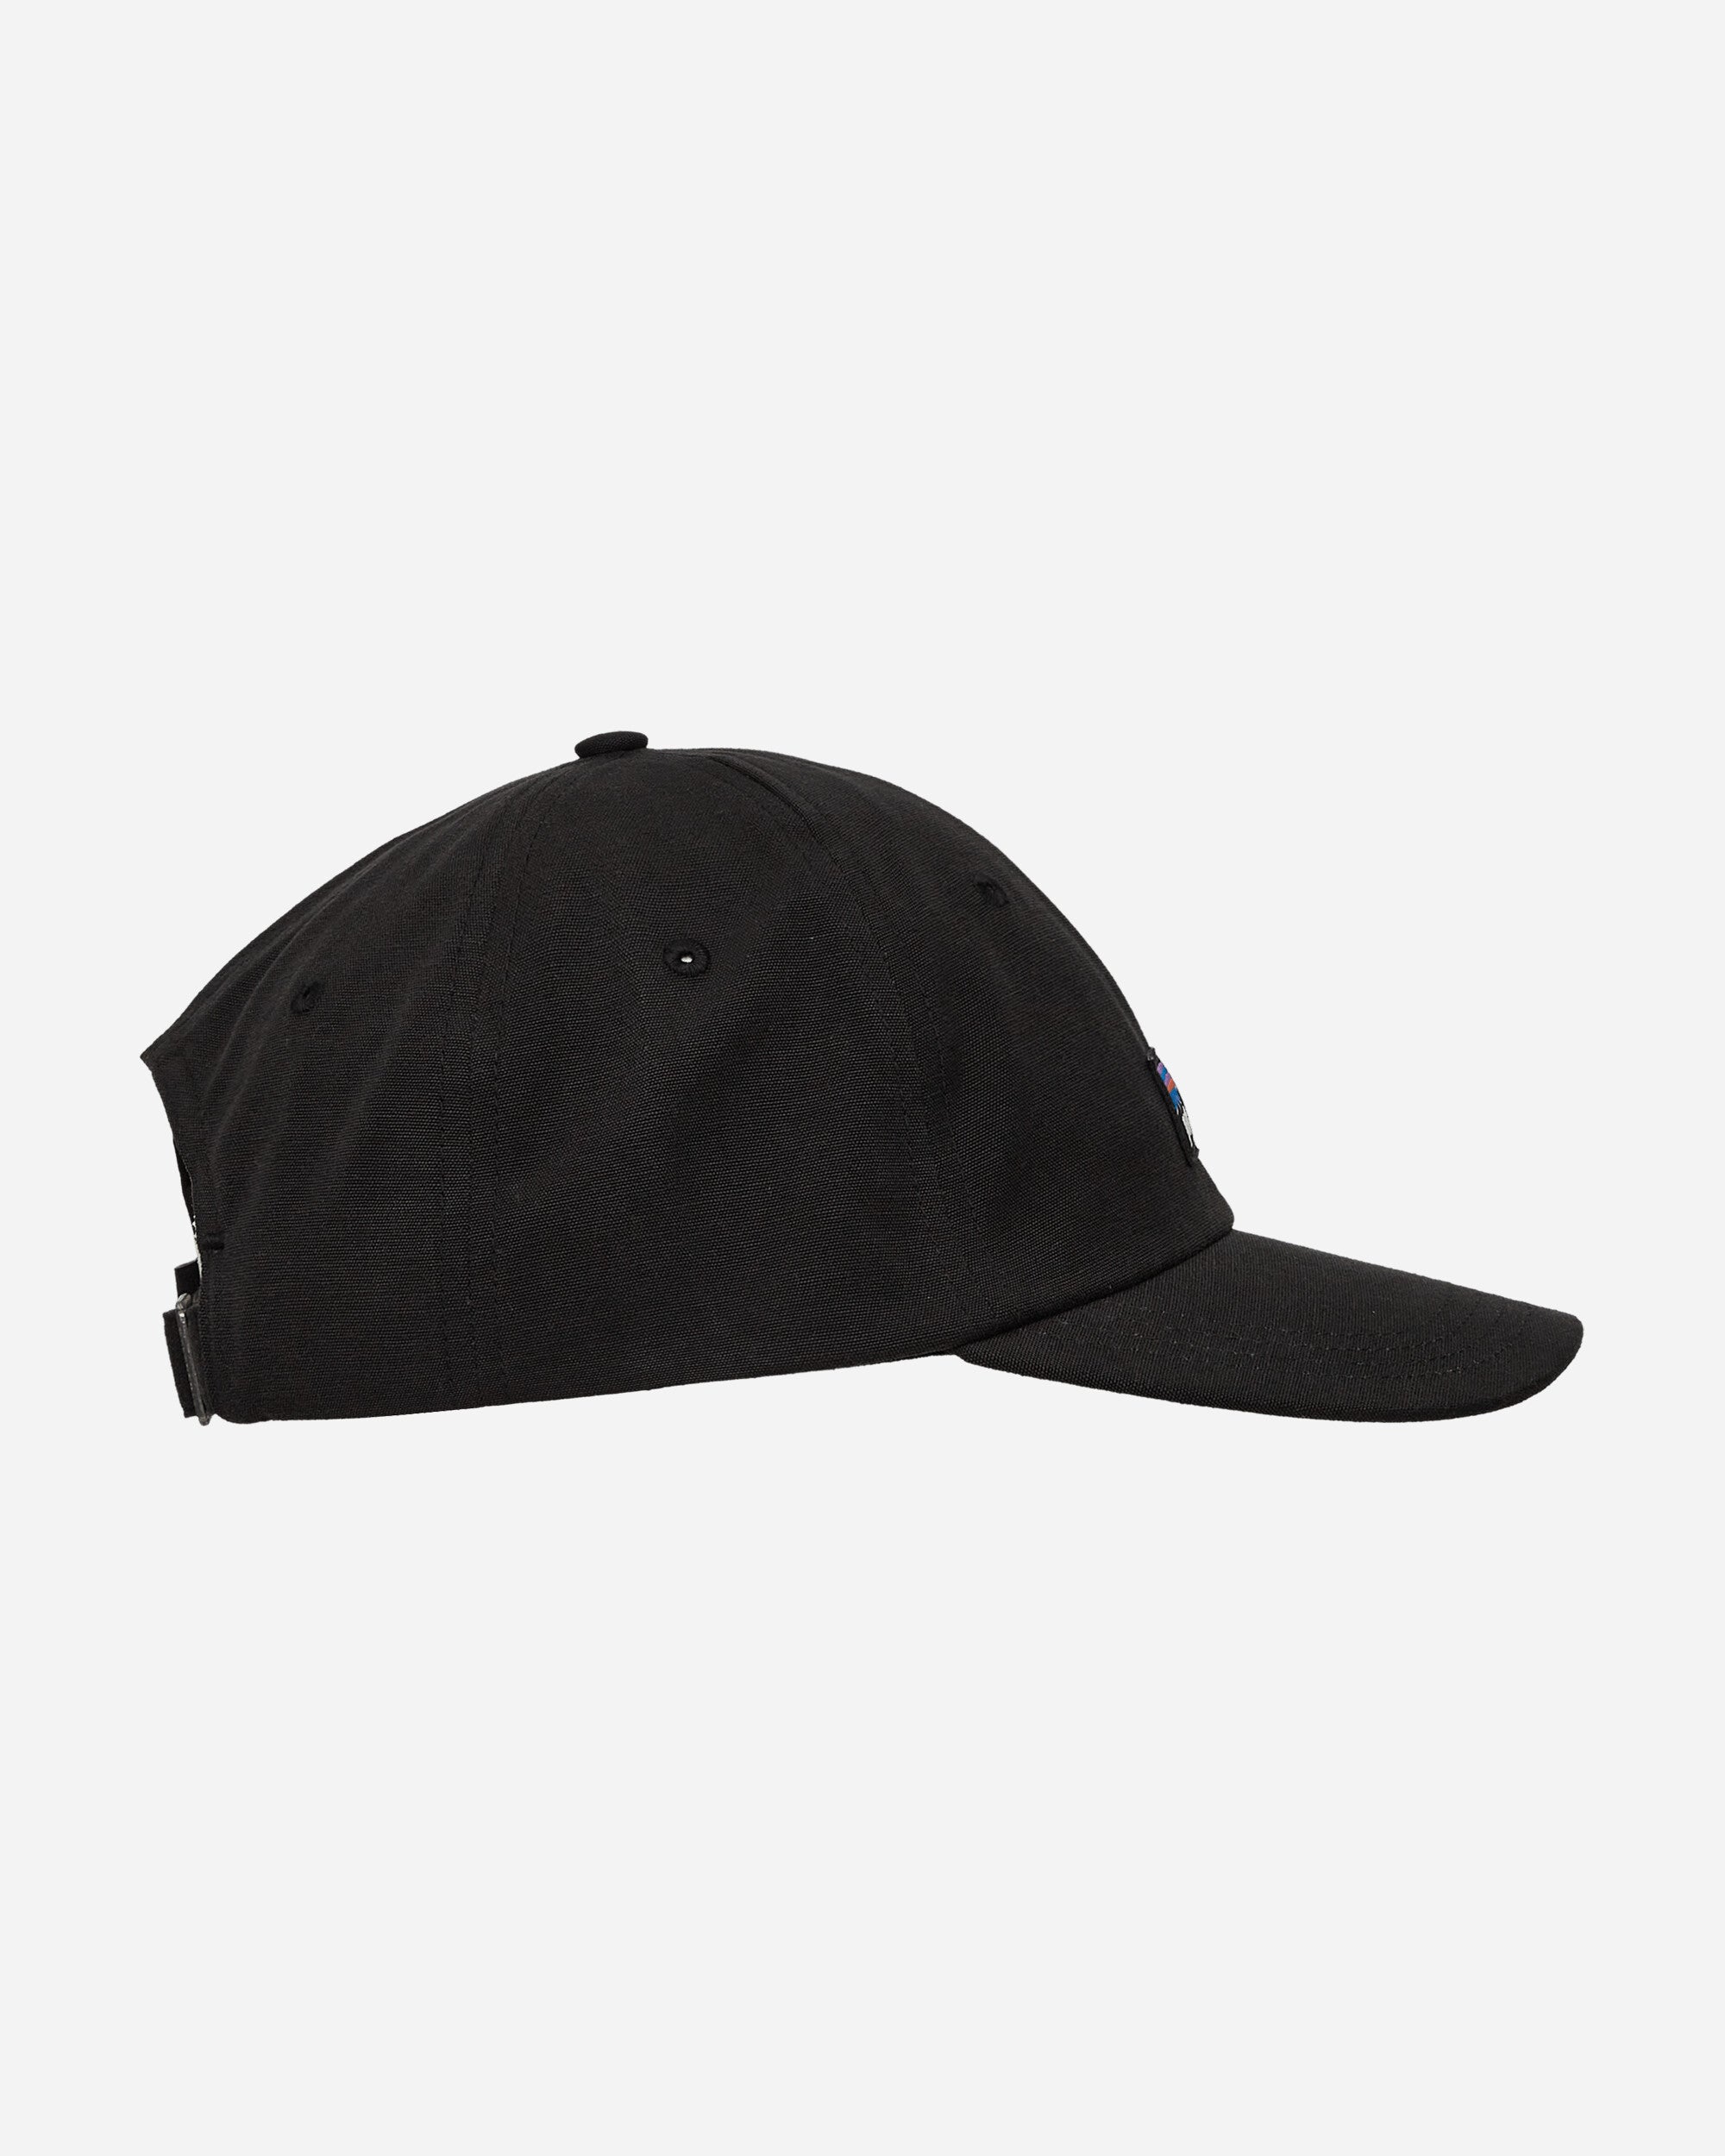 Patagonia P-6 Label Trad Cap Black Hats Caps 38296 BLK